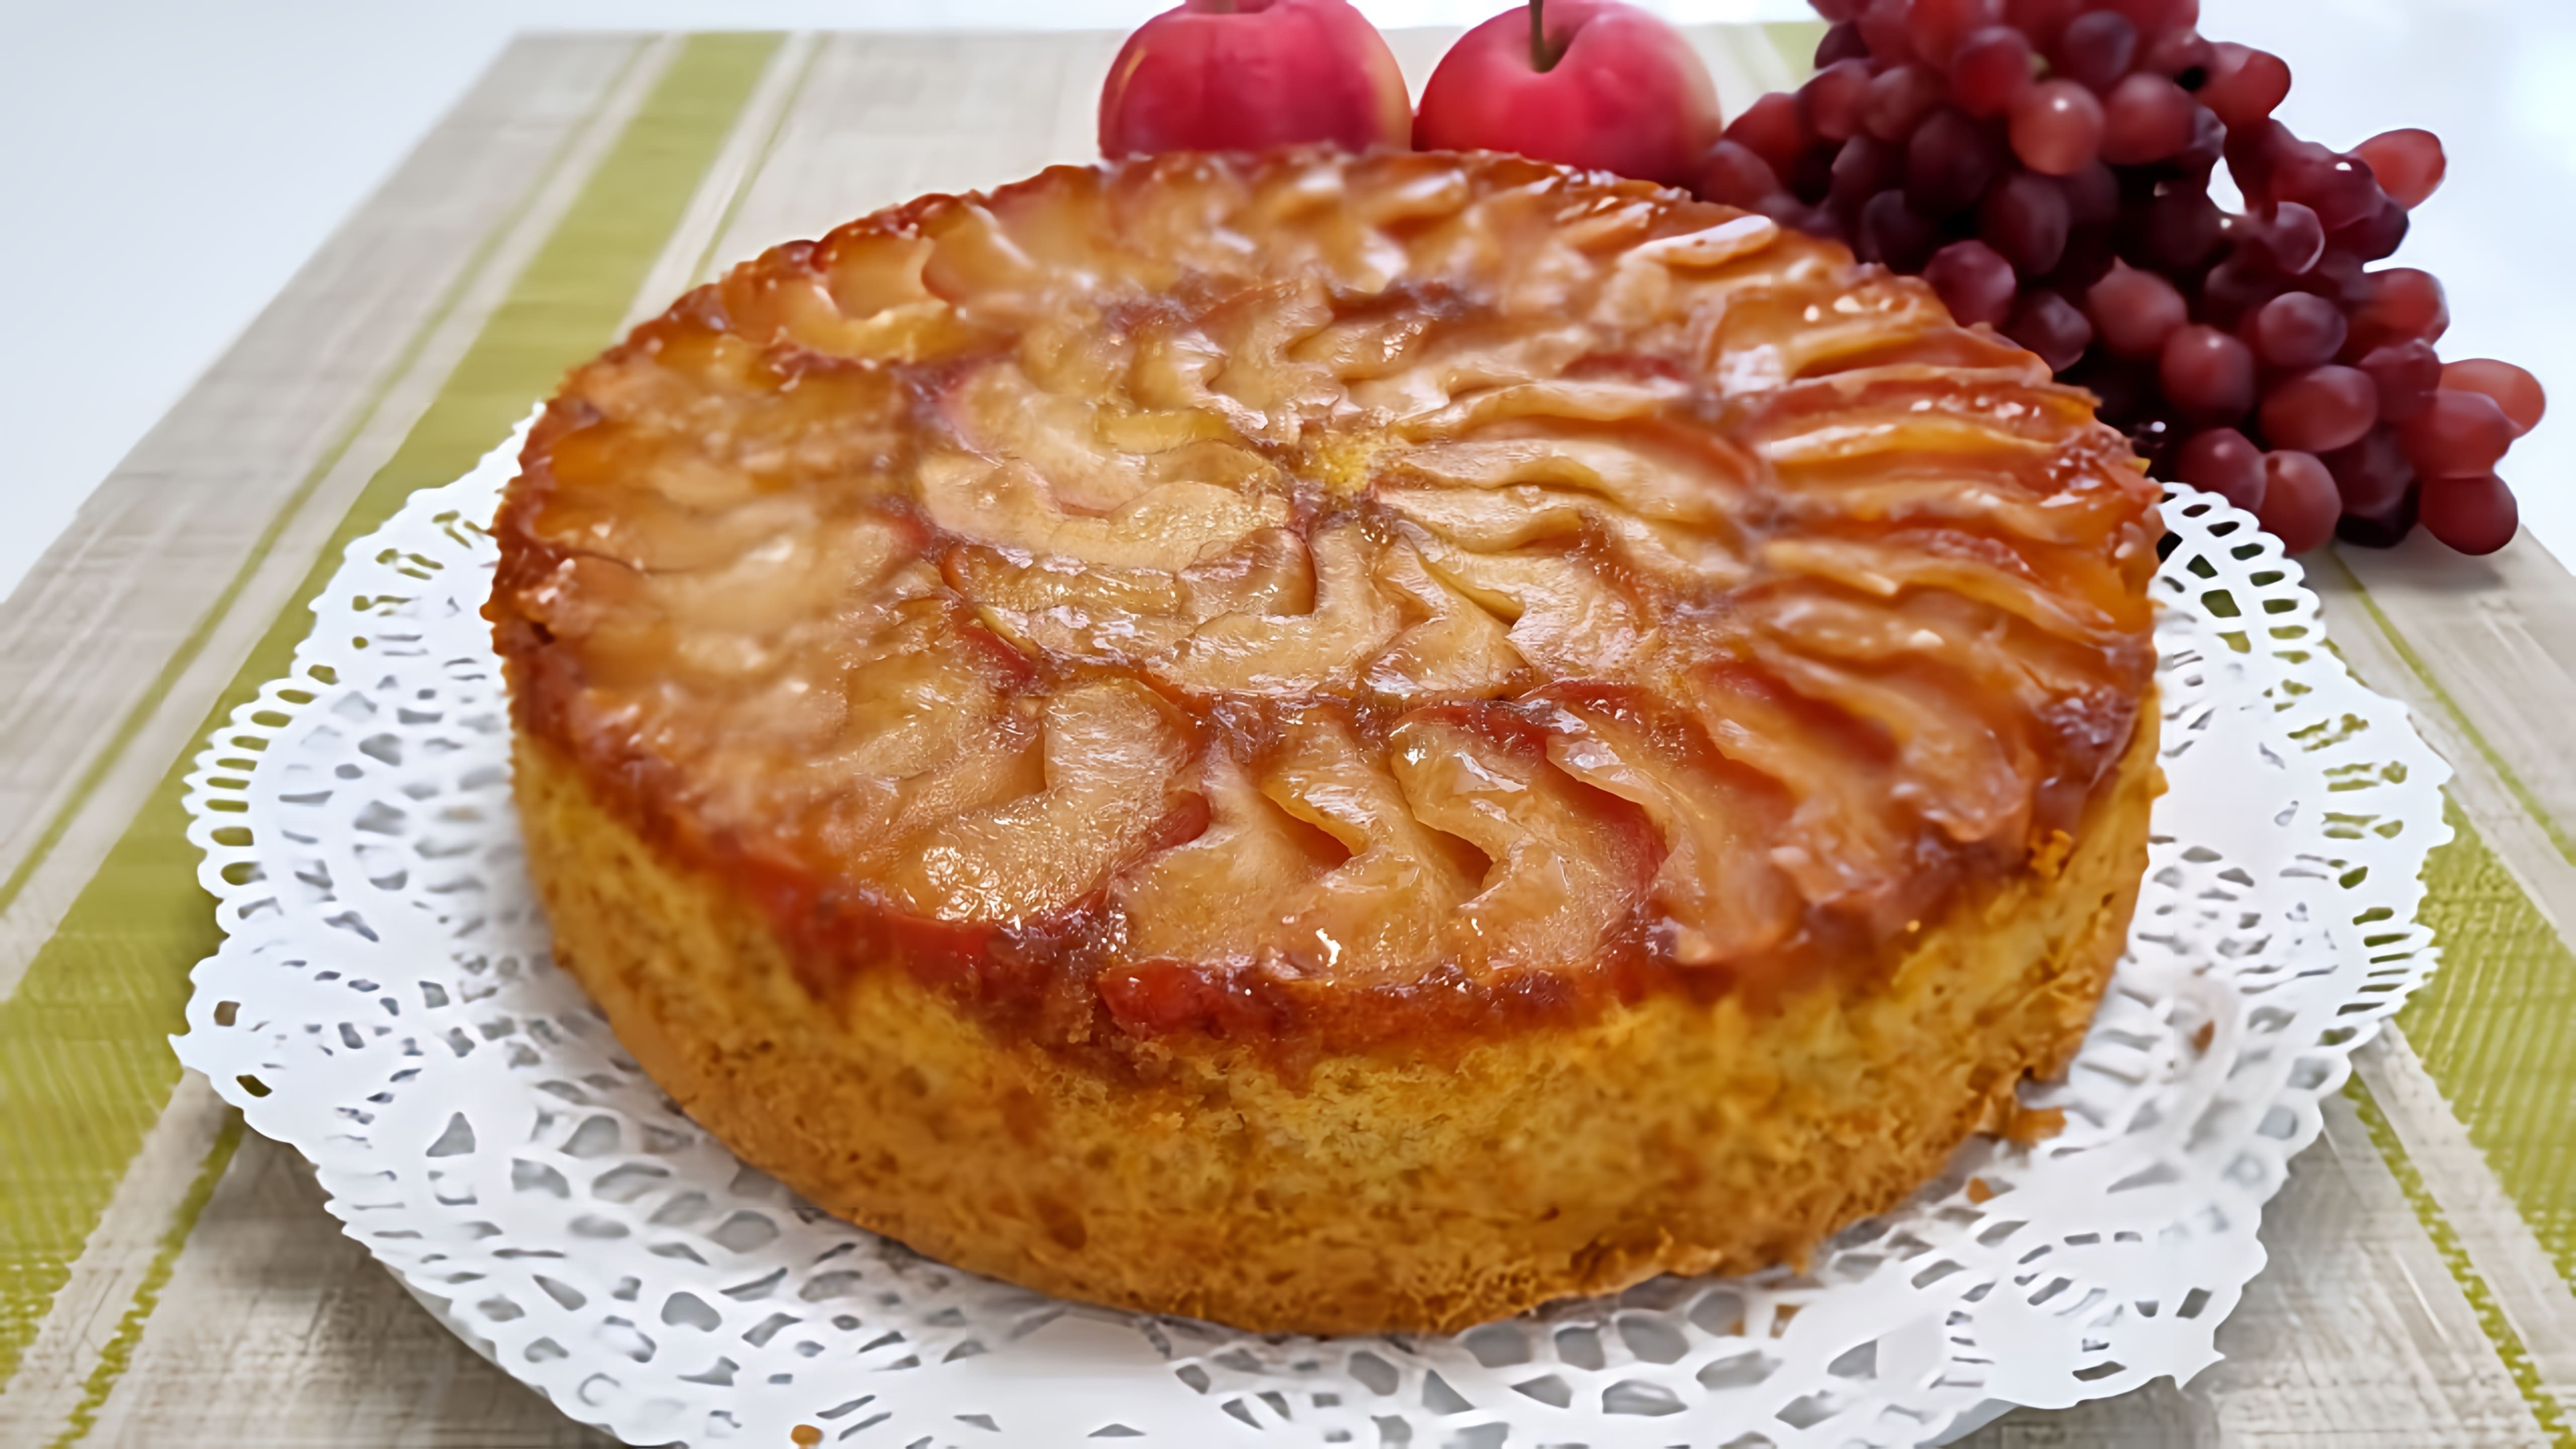 Видео как приготовить классический яблочный десерт "Шарлотта", но с более красивым оформлением и богатым вкусом благодаря добавлению карамелизованных яблок